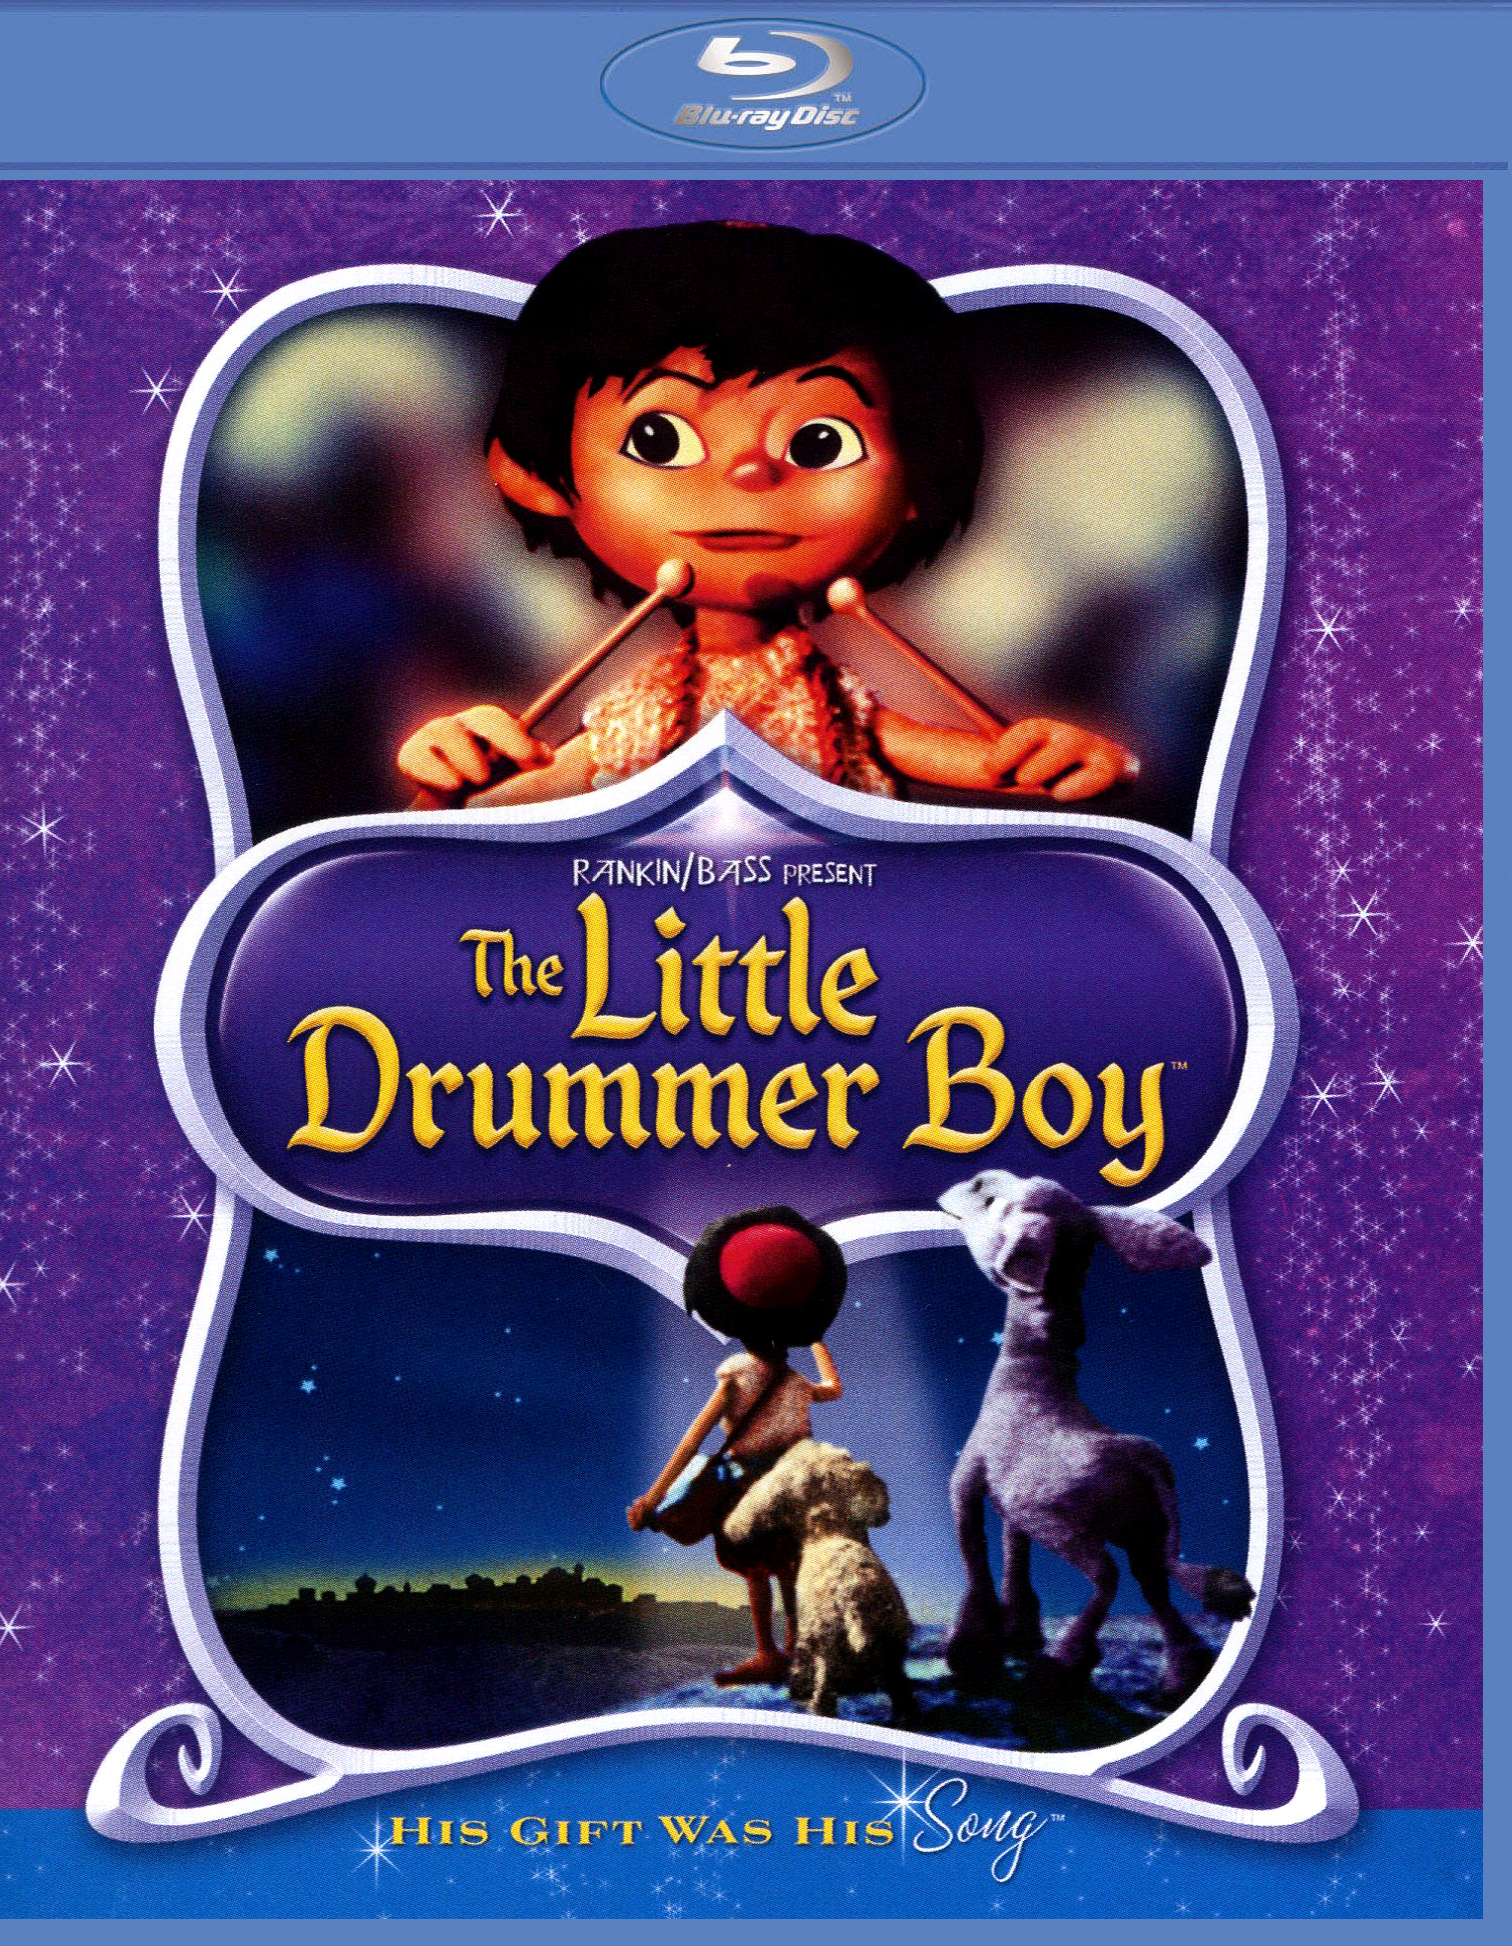 The Little Drummer Boy [Blu-ray] [1968] - Best Buy